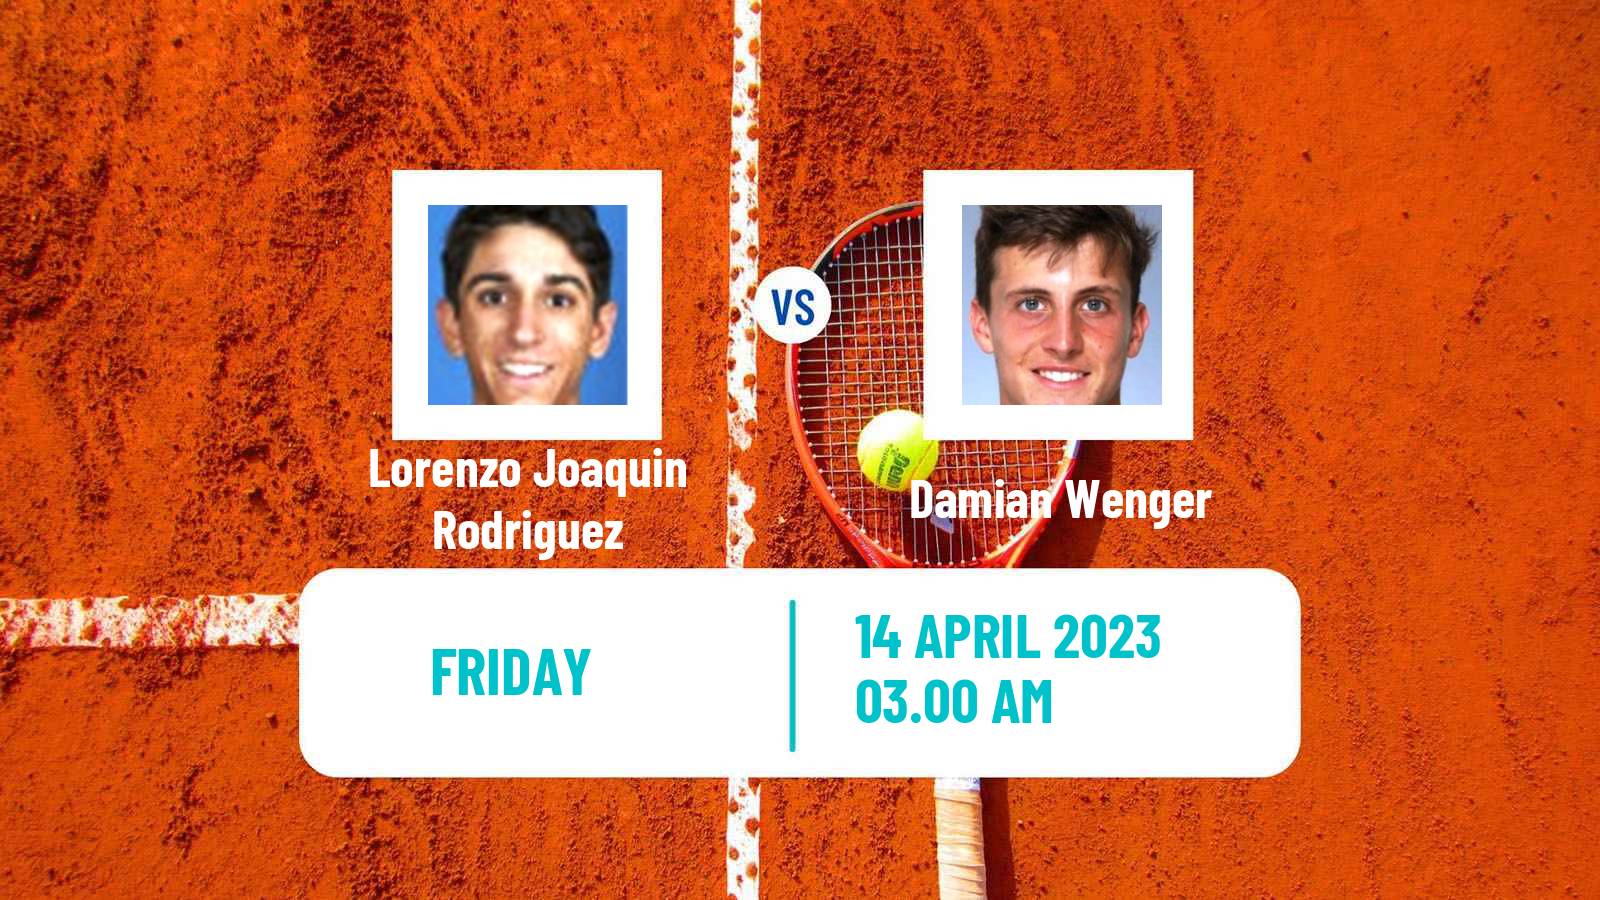 Tennis ITF Tournaments Lorenzo Joaquin Rodriguez - Damian Wenger